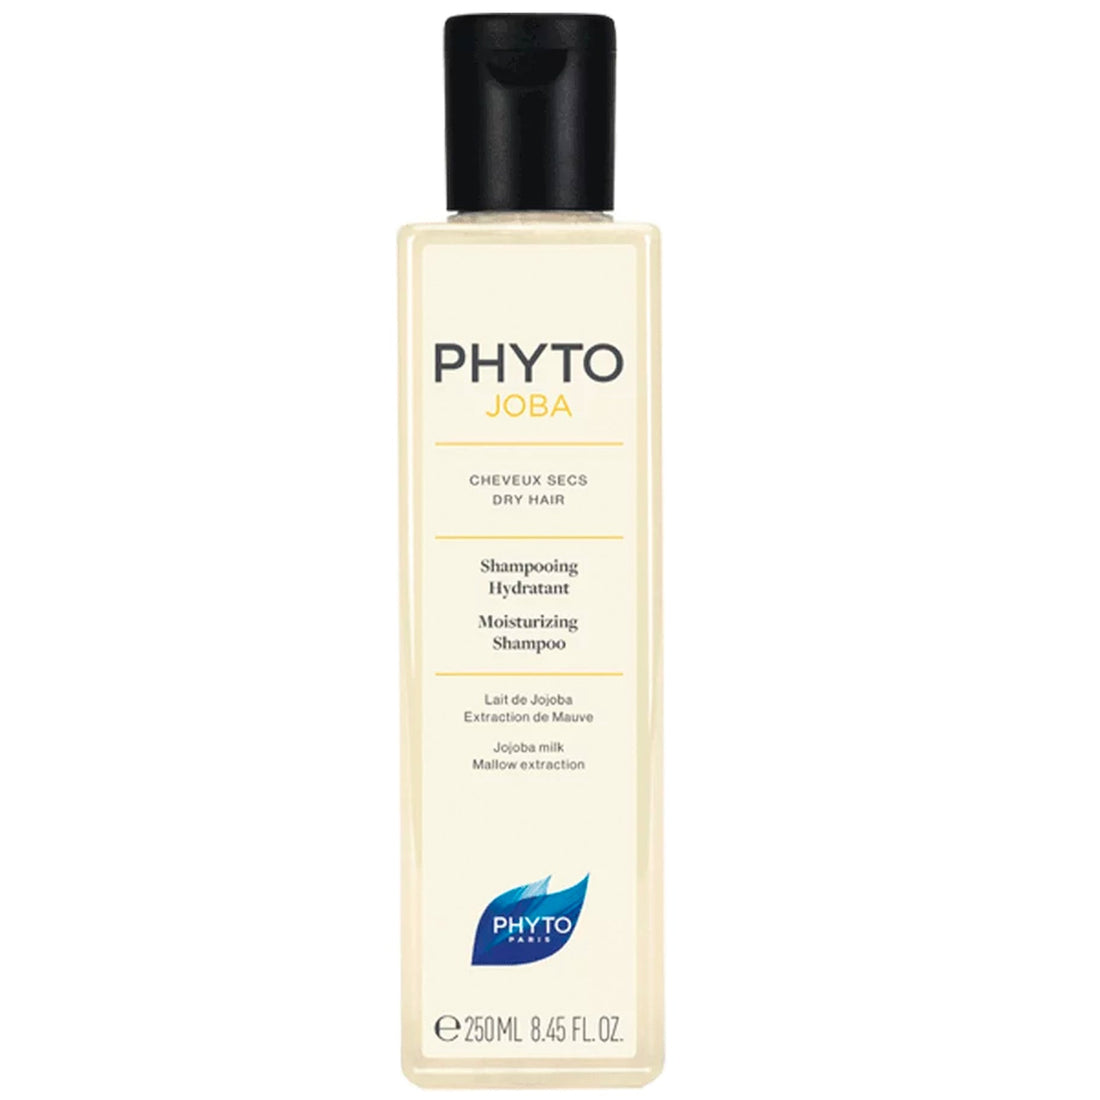 Phyto Phytojoba Moisturizing Shampoo 250ml